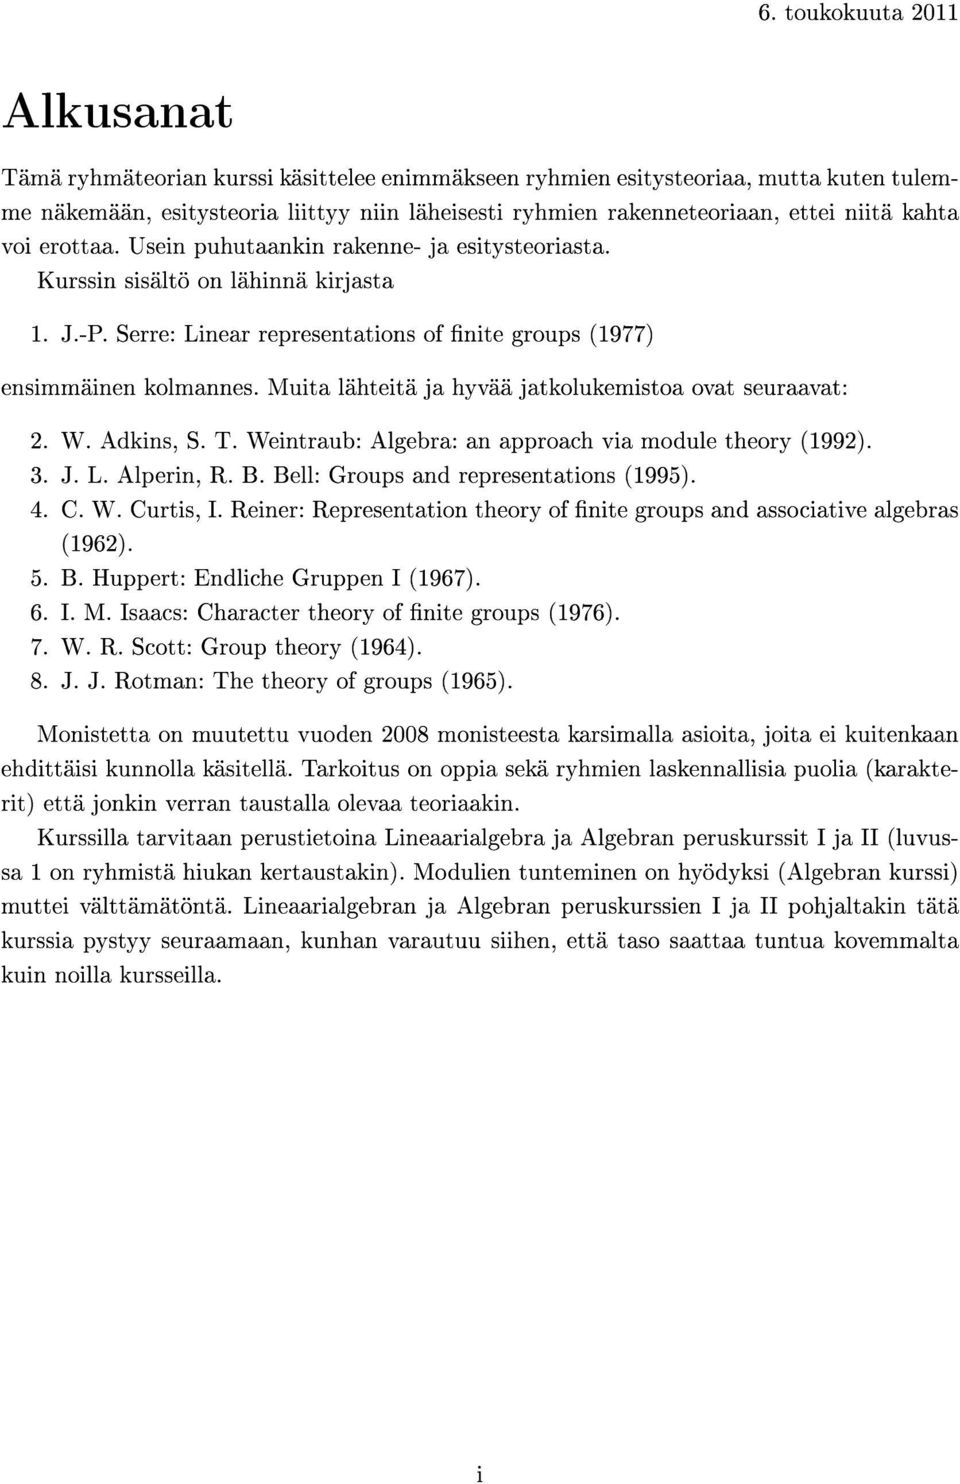 Muita lähteitä ja hyvää jatkolukemistoa ovat seuraavat: 2. W. Adkins, S. T. Weintraub: Algebra: an approach via module theory (1992). 3. J. L. Alperin, R. B. Bell: Groups and representations (1995).